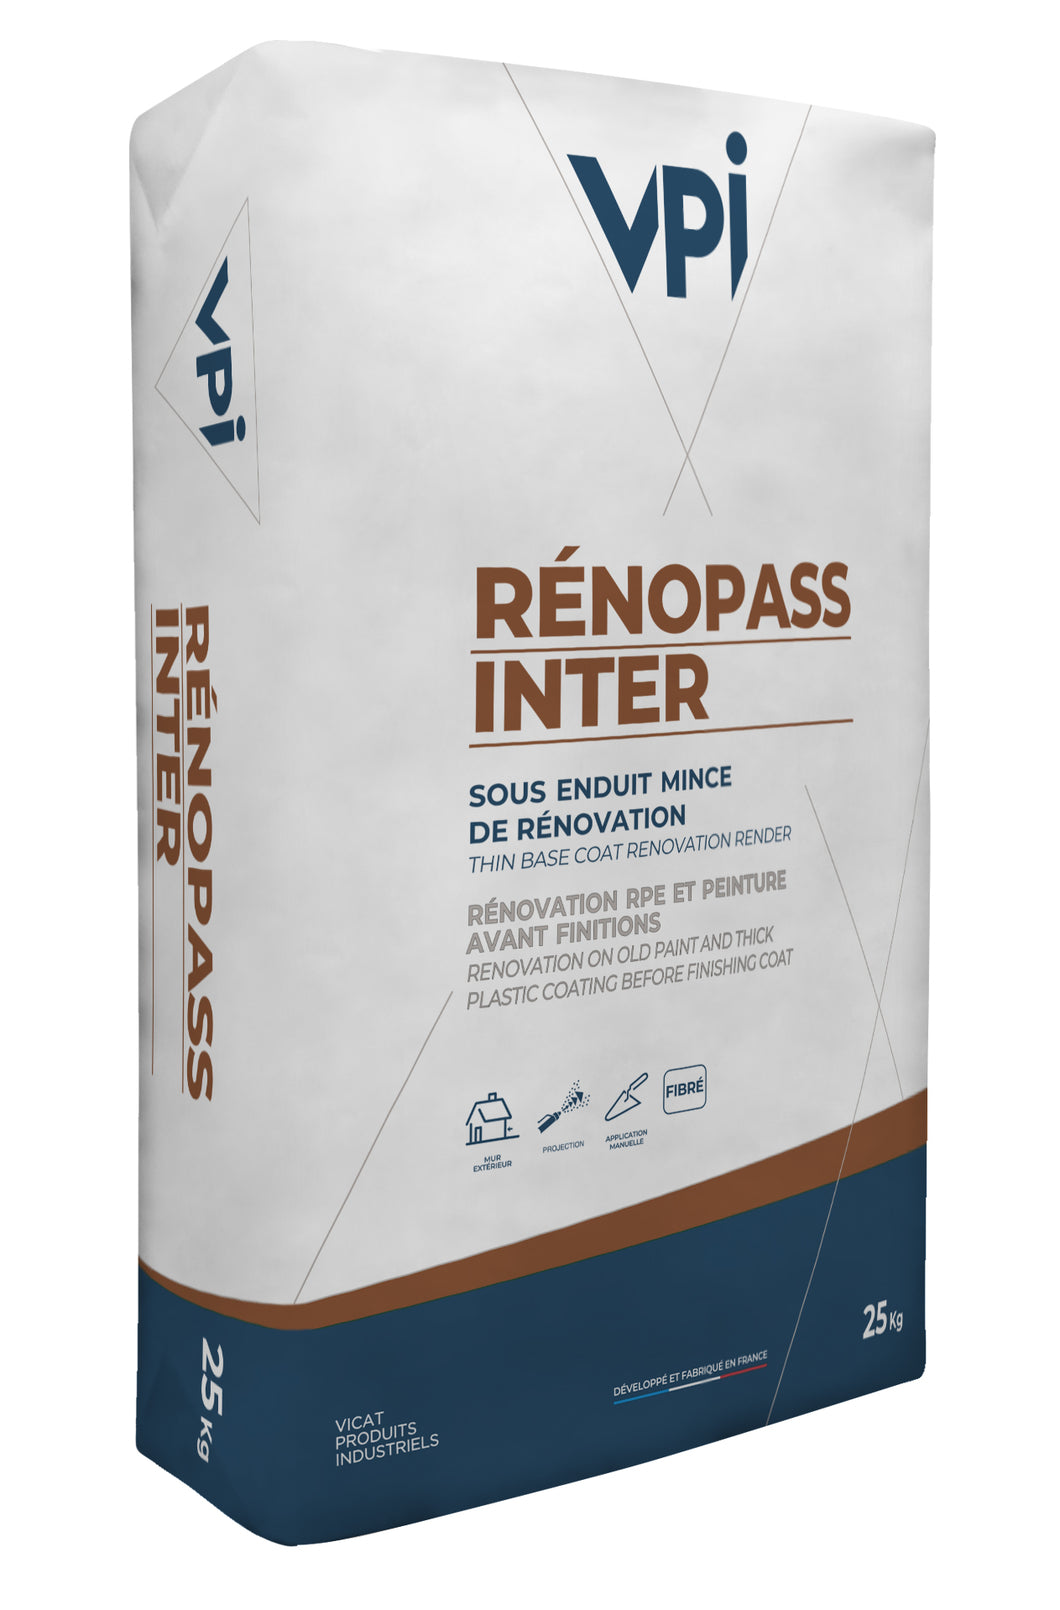 VPI RenoPass Inter